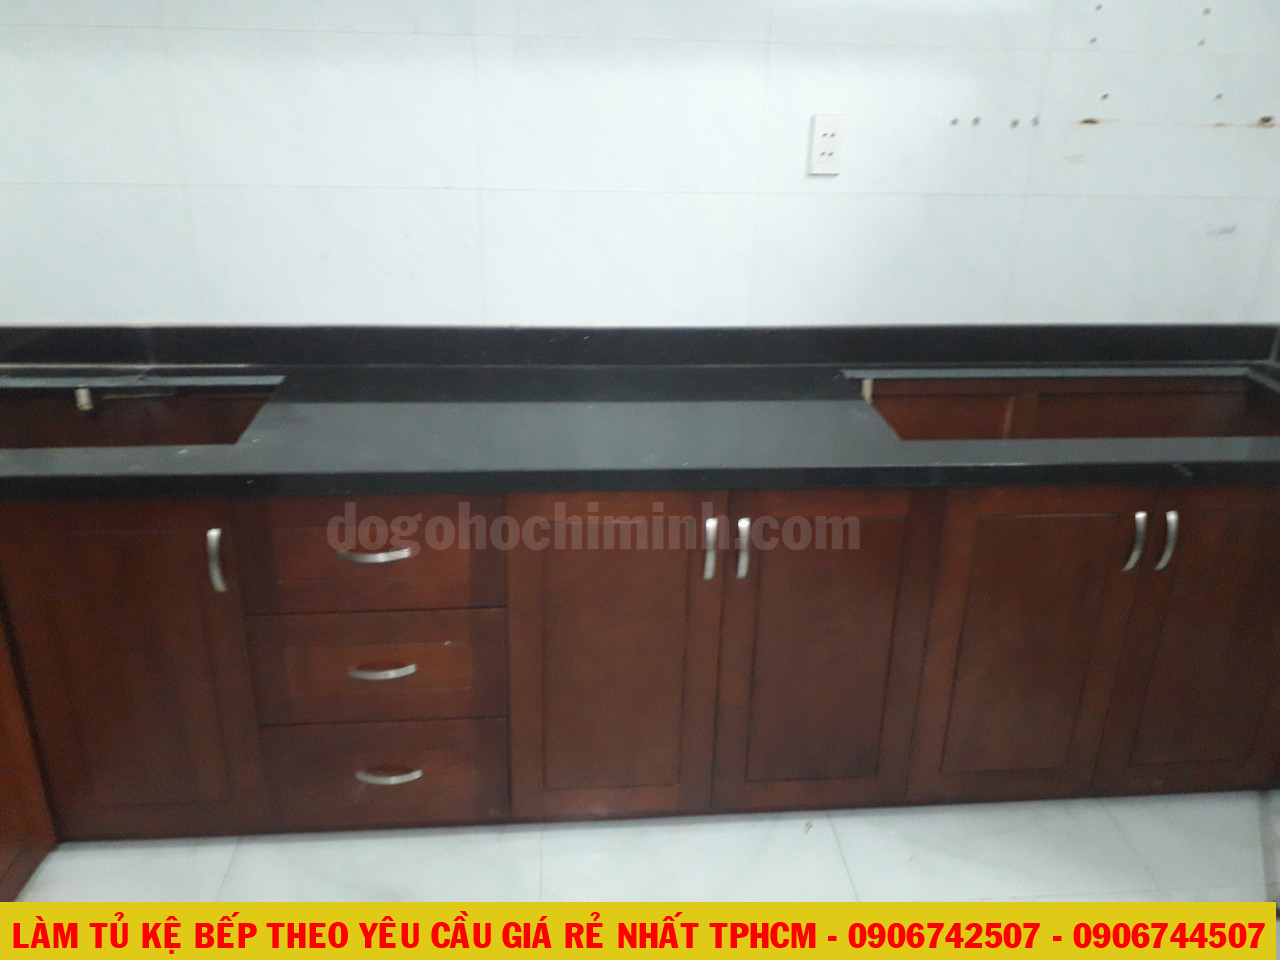 Thi công mẫu tủ kệ bếp giá rẻ nhà A Văn tại quận Tân Bình - TPHCM 2020